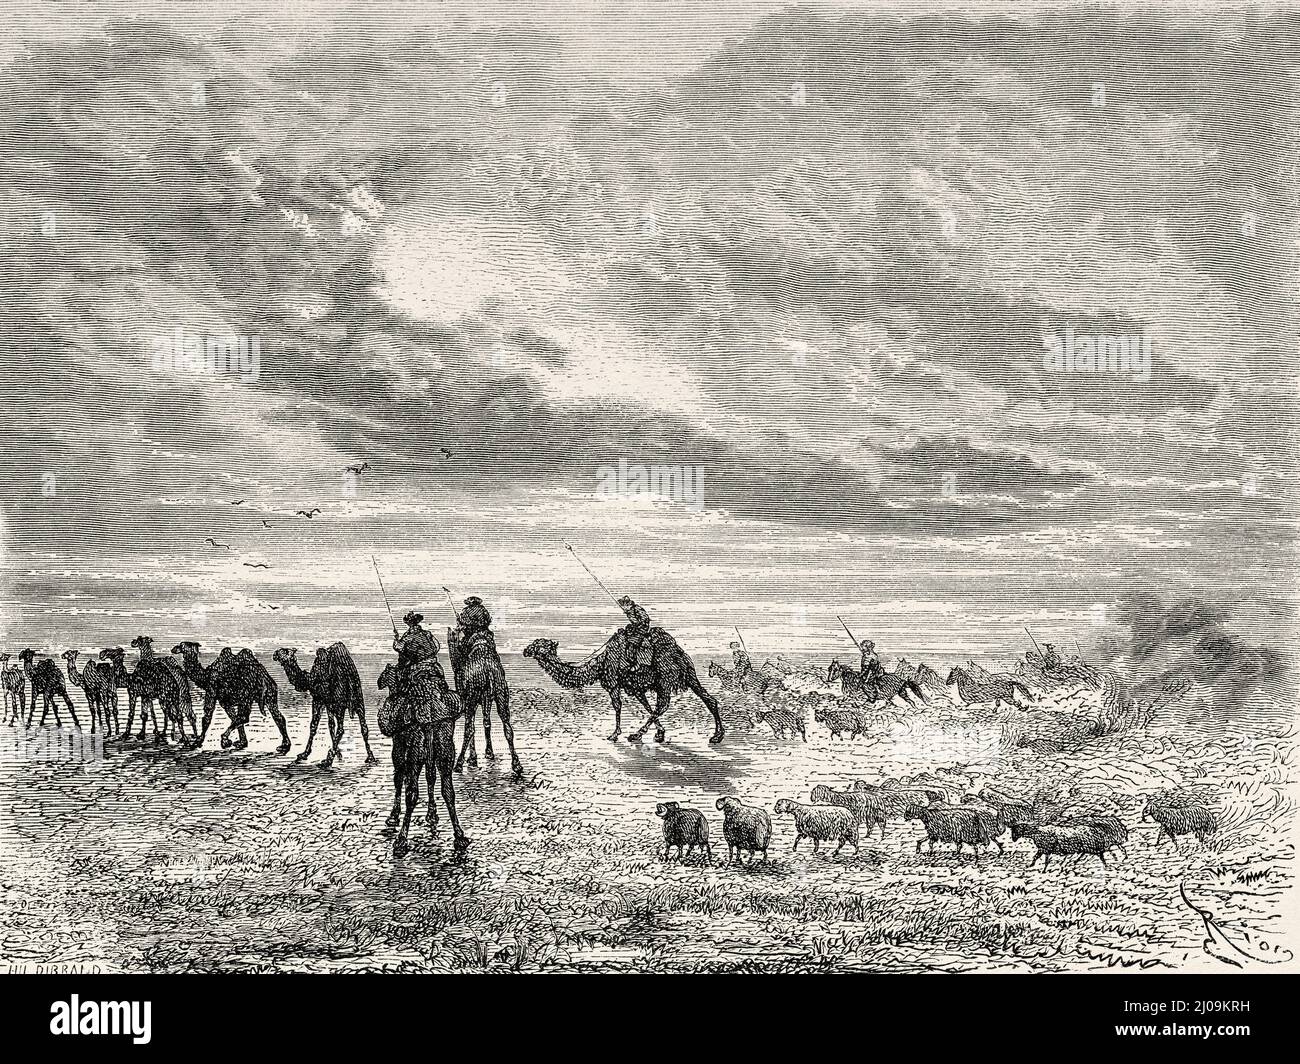 Troupeaux d'animaux dans le désert de Gobi, Mongolie. Asie. Voyage en Mongolie par Nikolai Mijailovich Przewalski en 1870-1873, le Tour du monde 1877 Banque D'Images